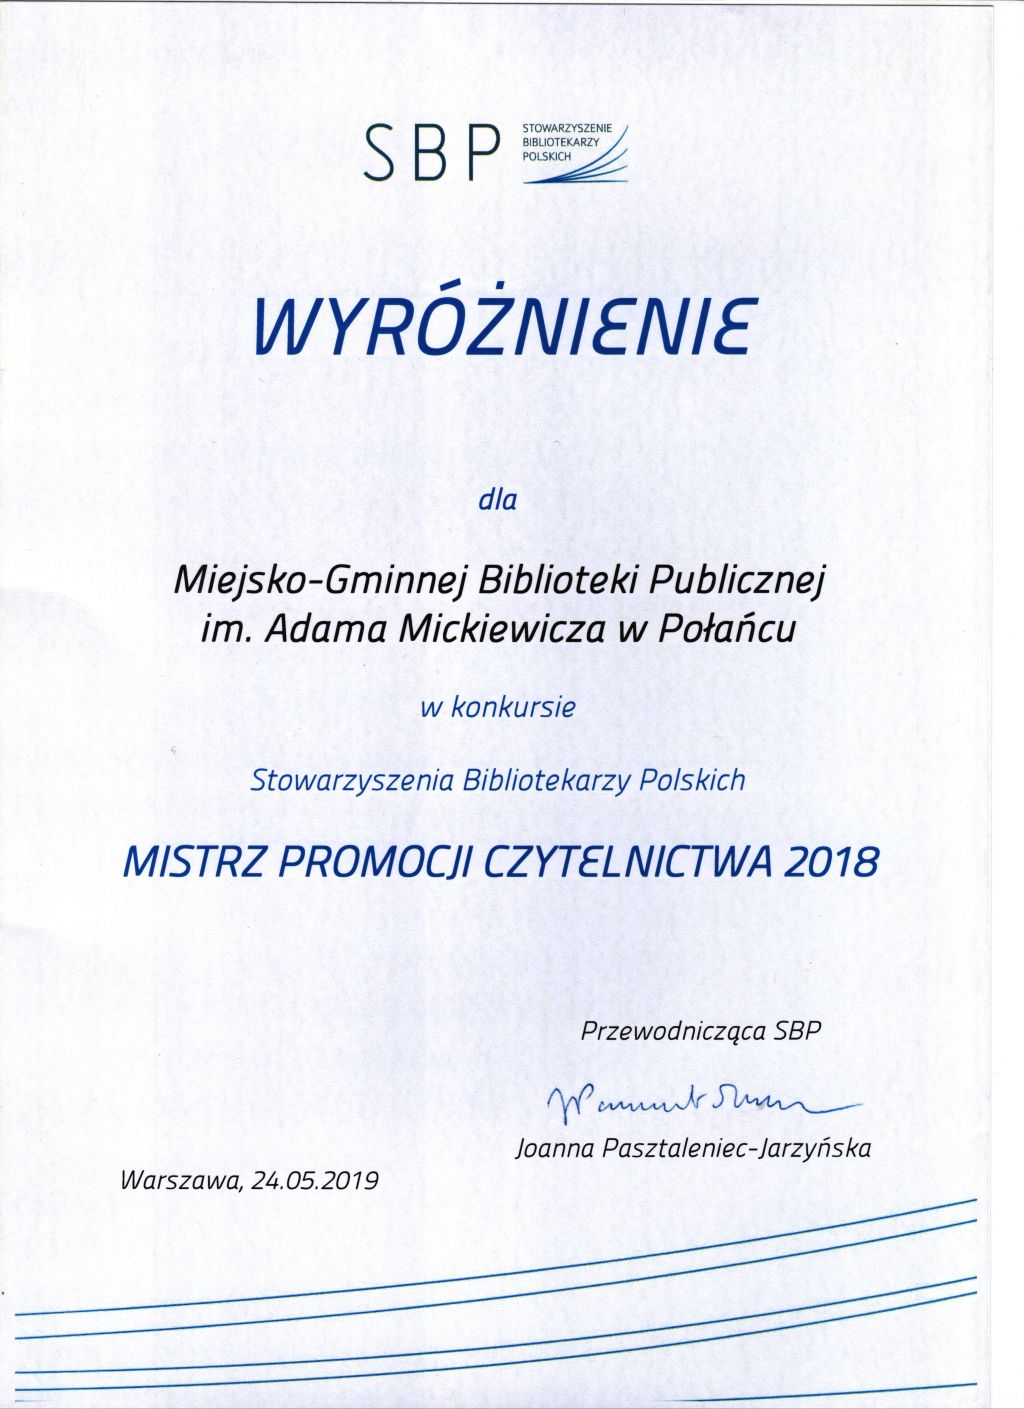 Mistrz promocji czytelnictwa 2018 dyplom.pdf